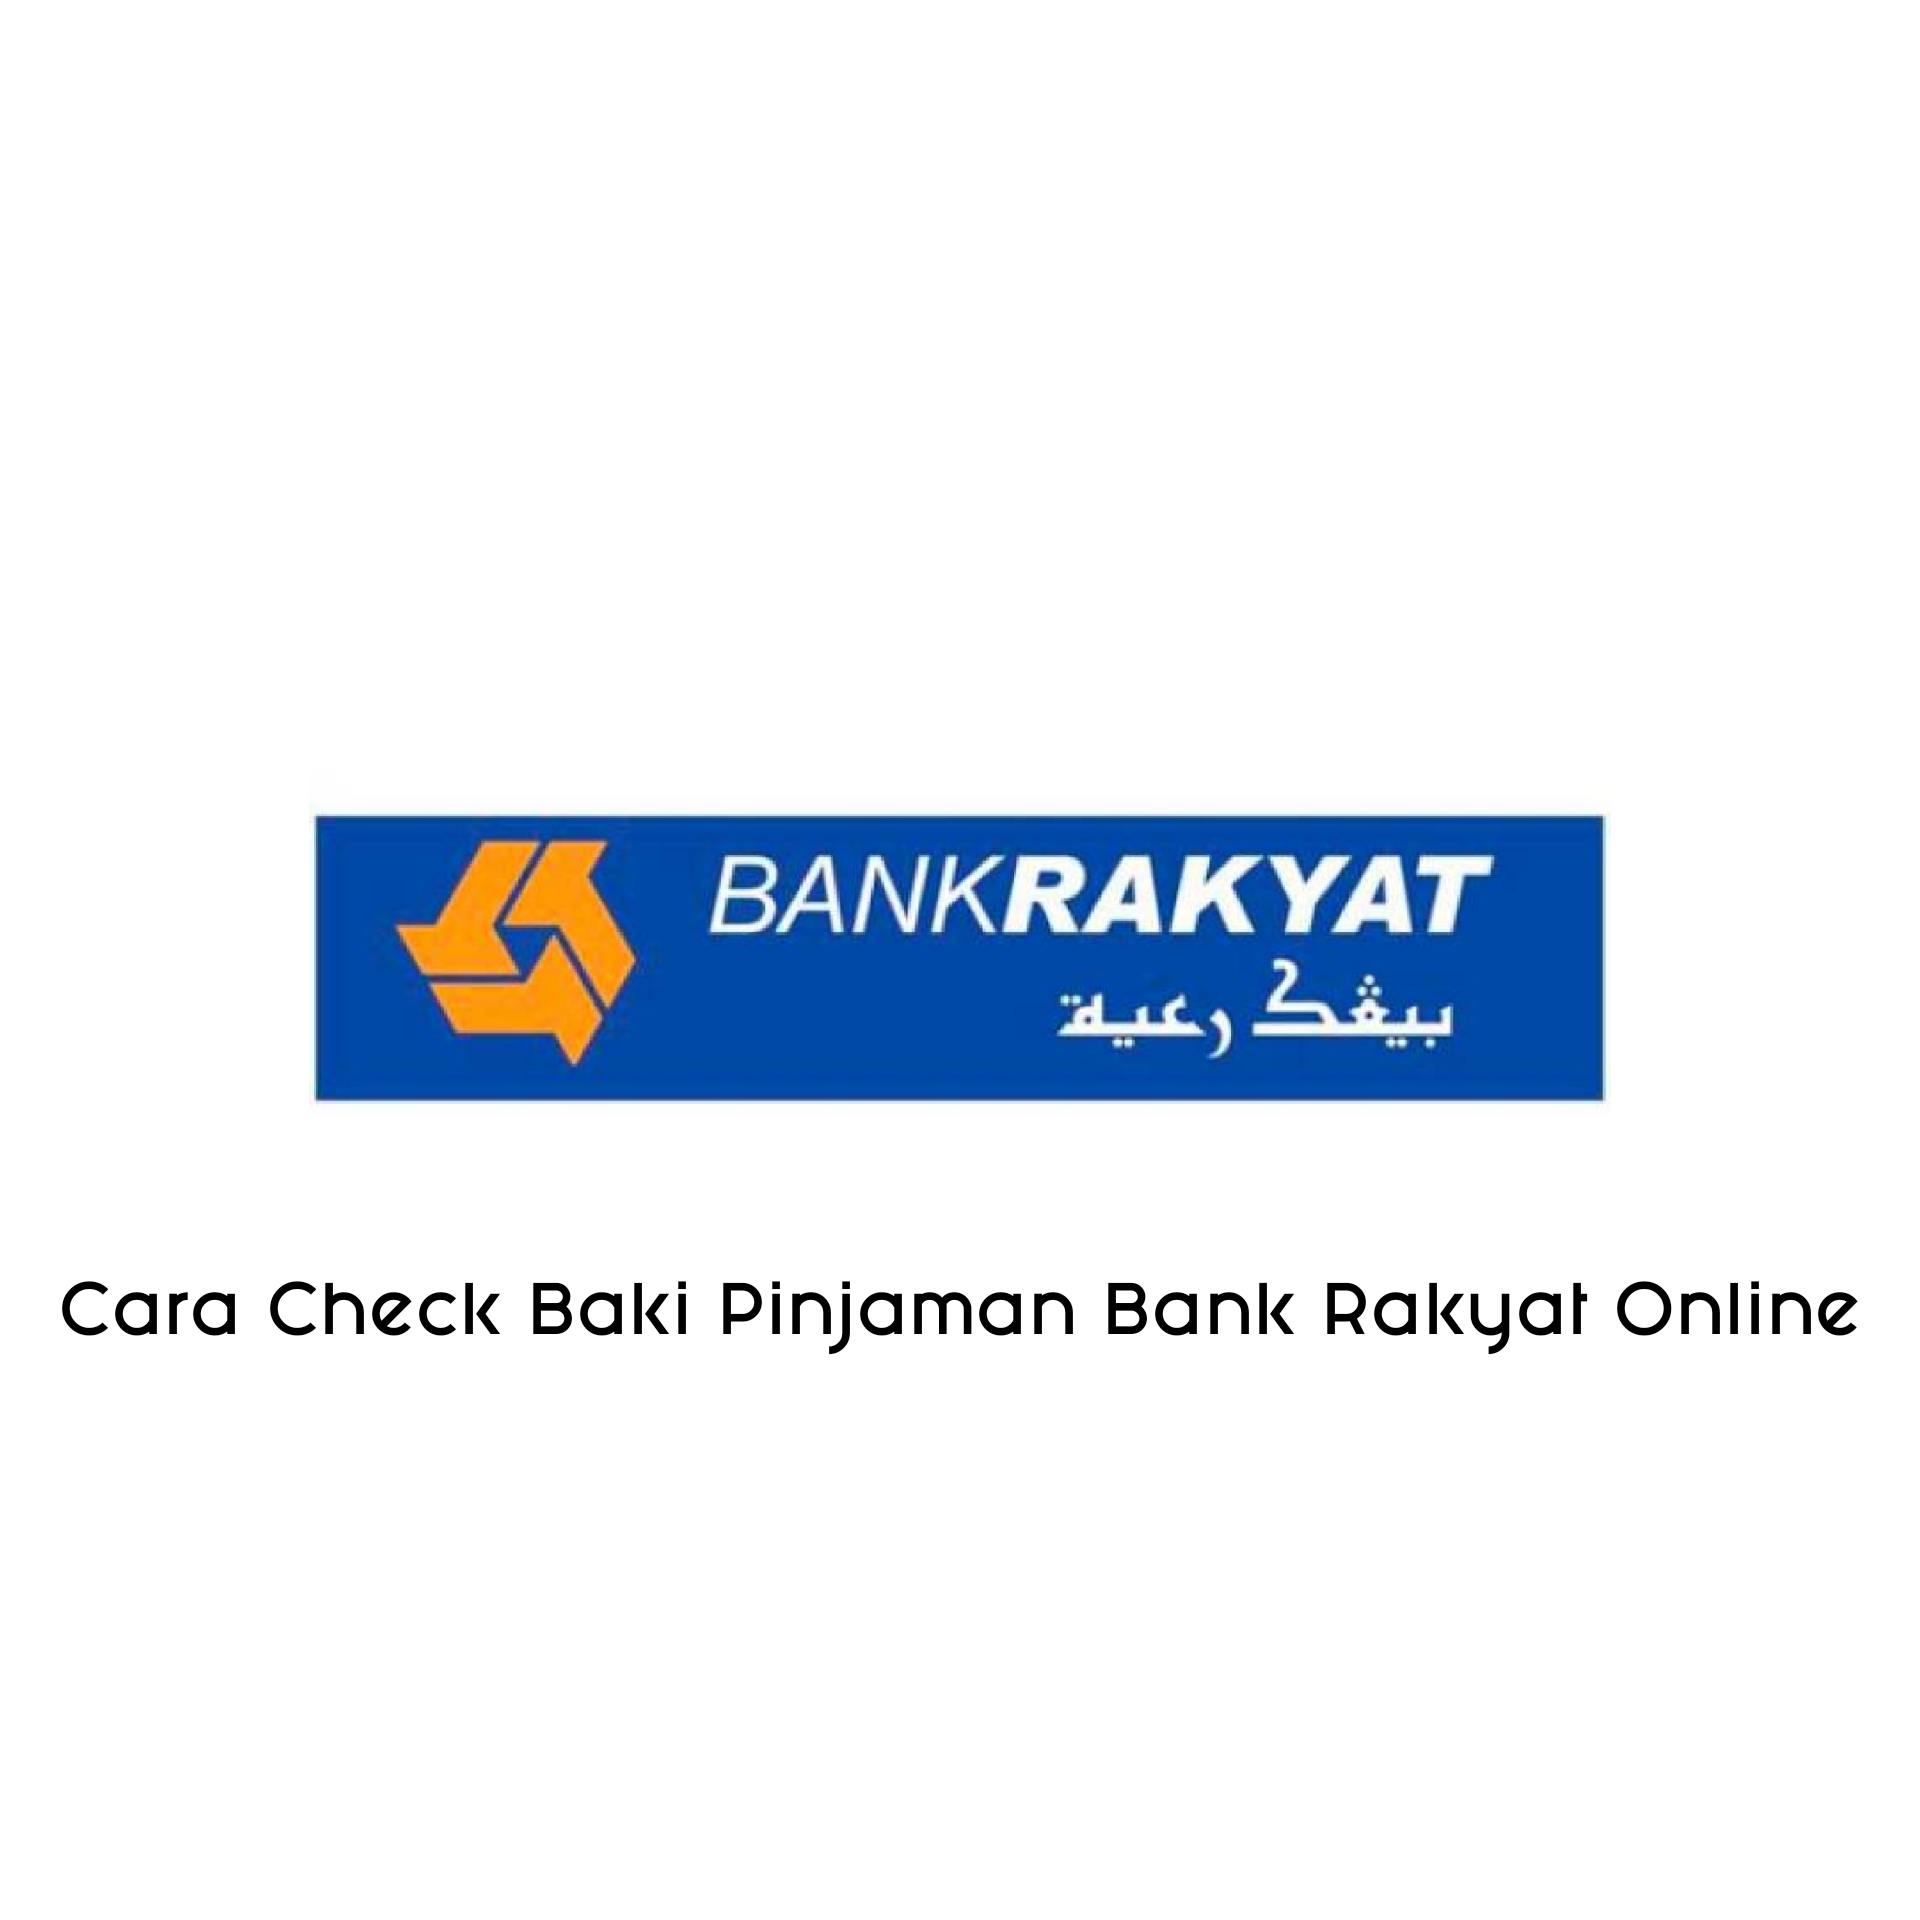 Cara Check Baki Pinjaman Bank Rakyat online